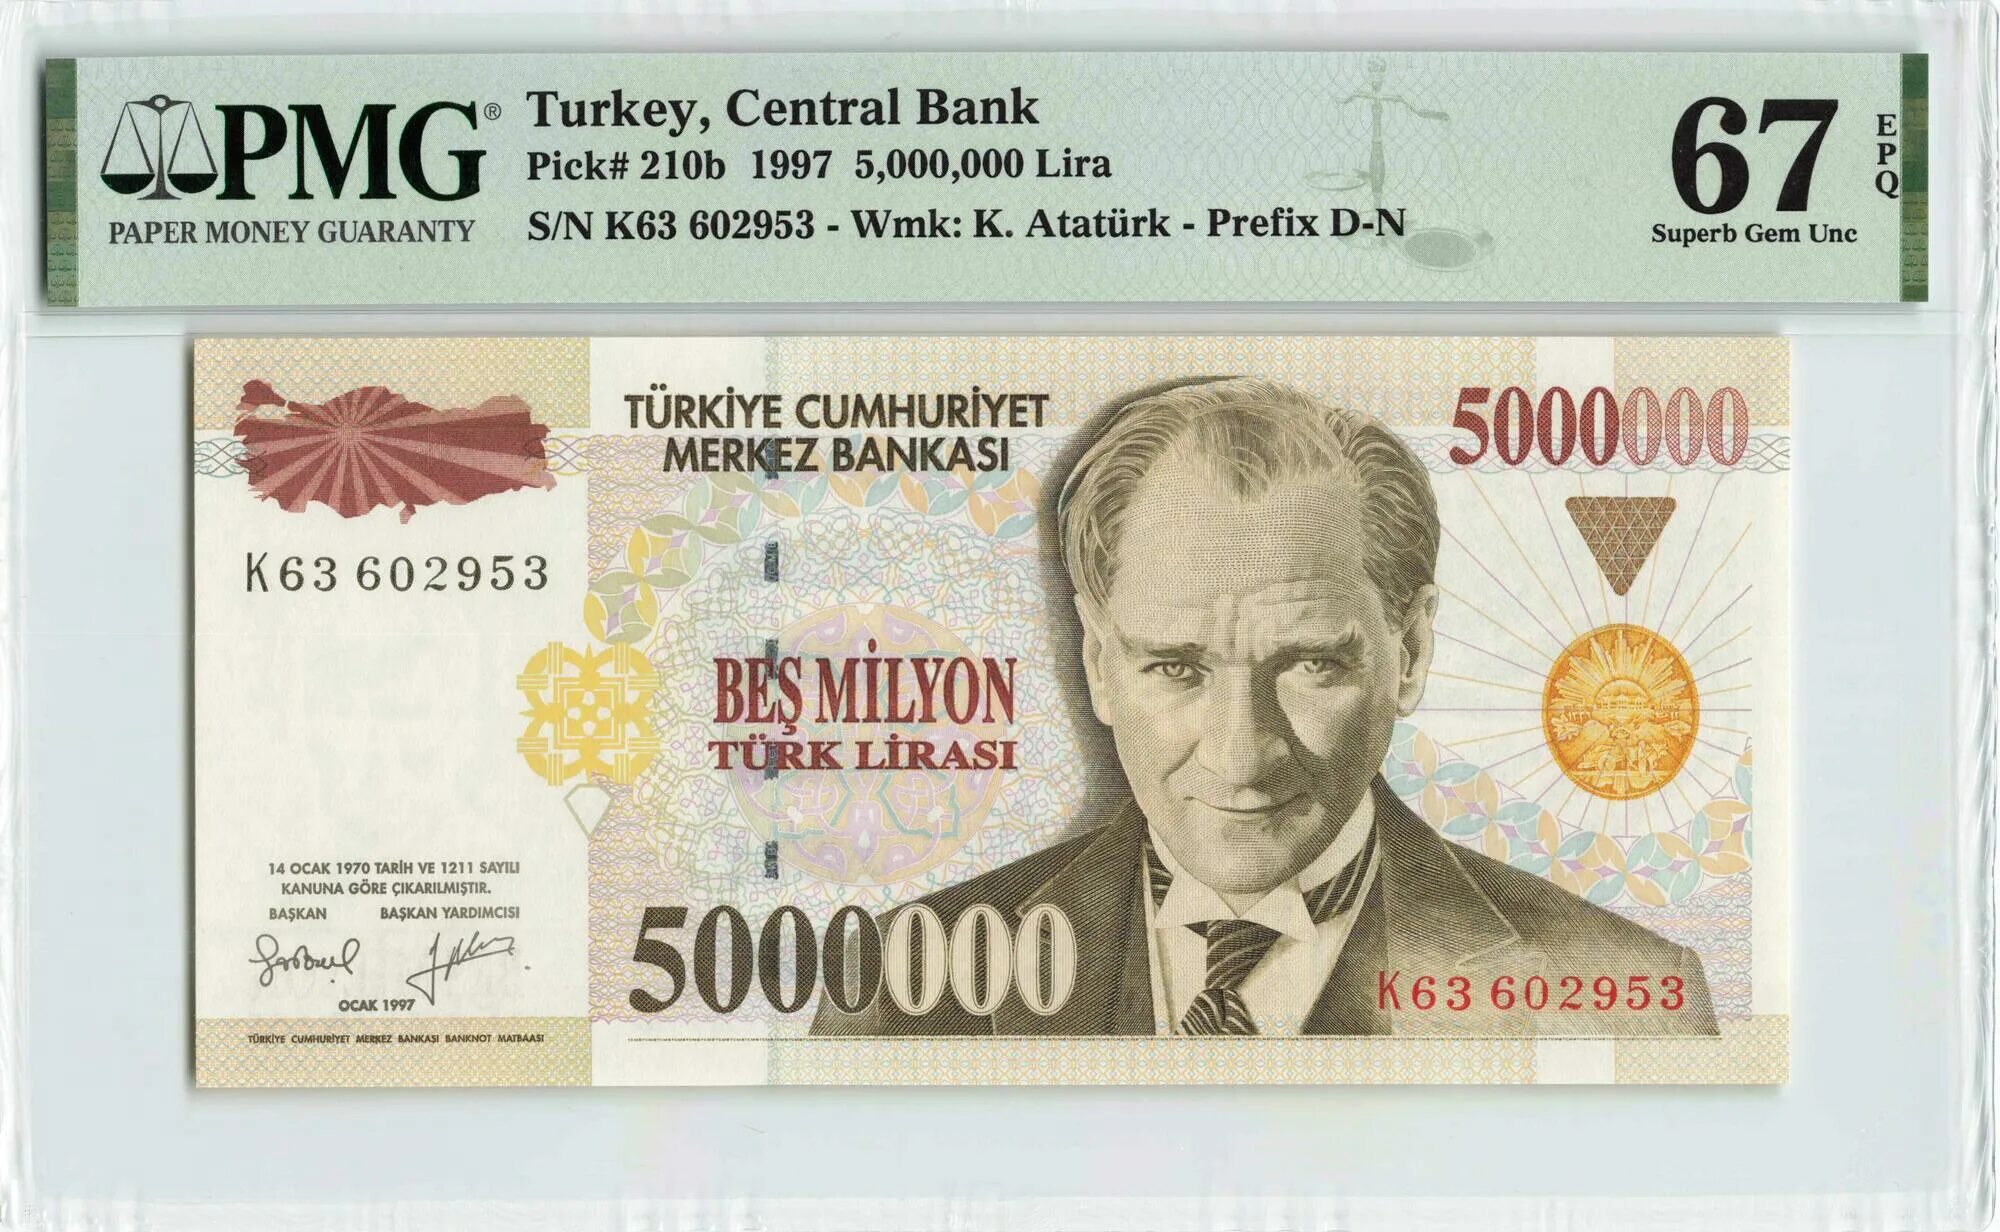 160 лир в рублях. 5000000 Лир. 5 Турецких лир. Банкноты Турции в обращении. 1000000 Turk Lirasi в рублях.